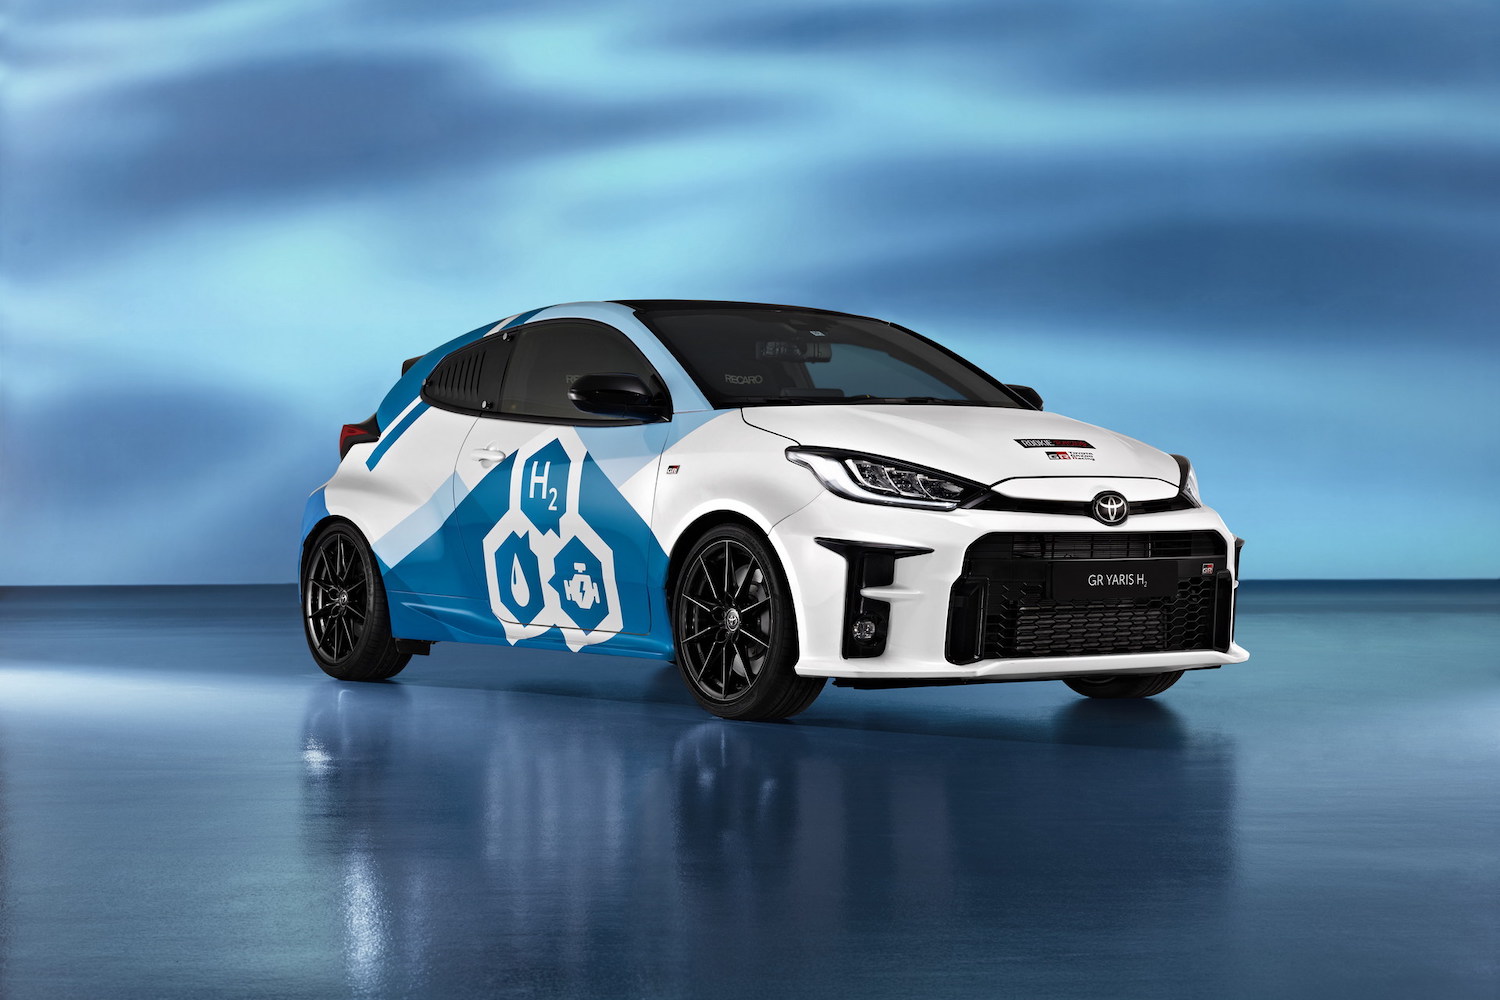 Toyota GR Yaris a hidrogénio, a solução para os motores de combustão